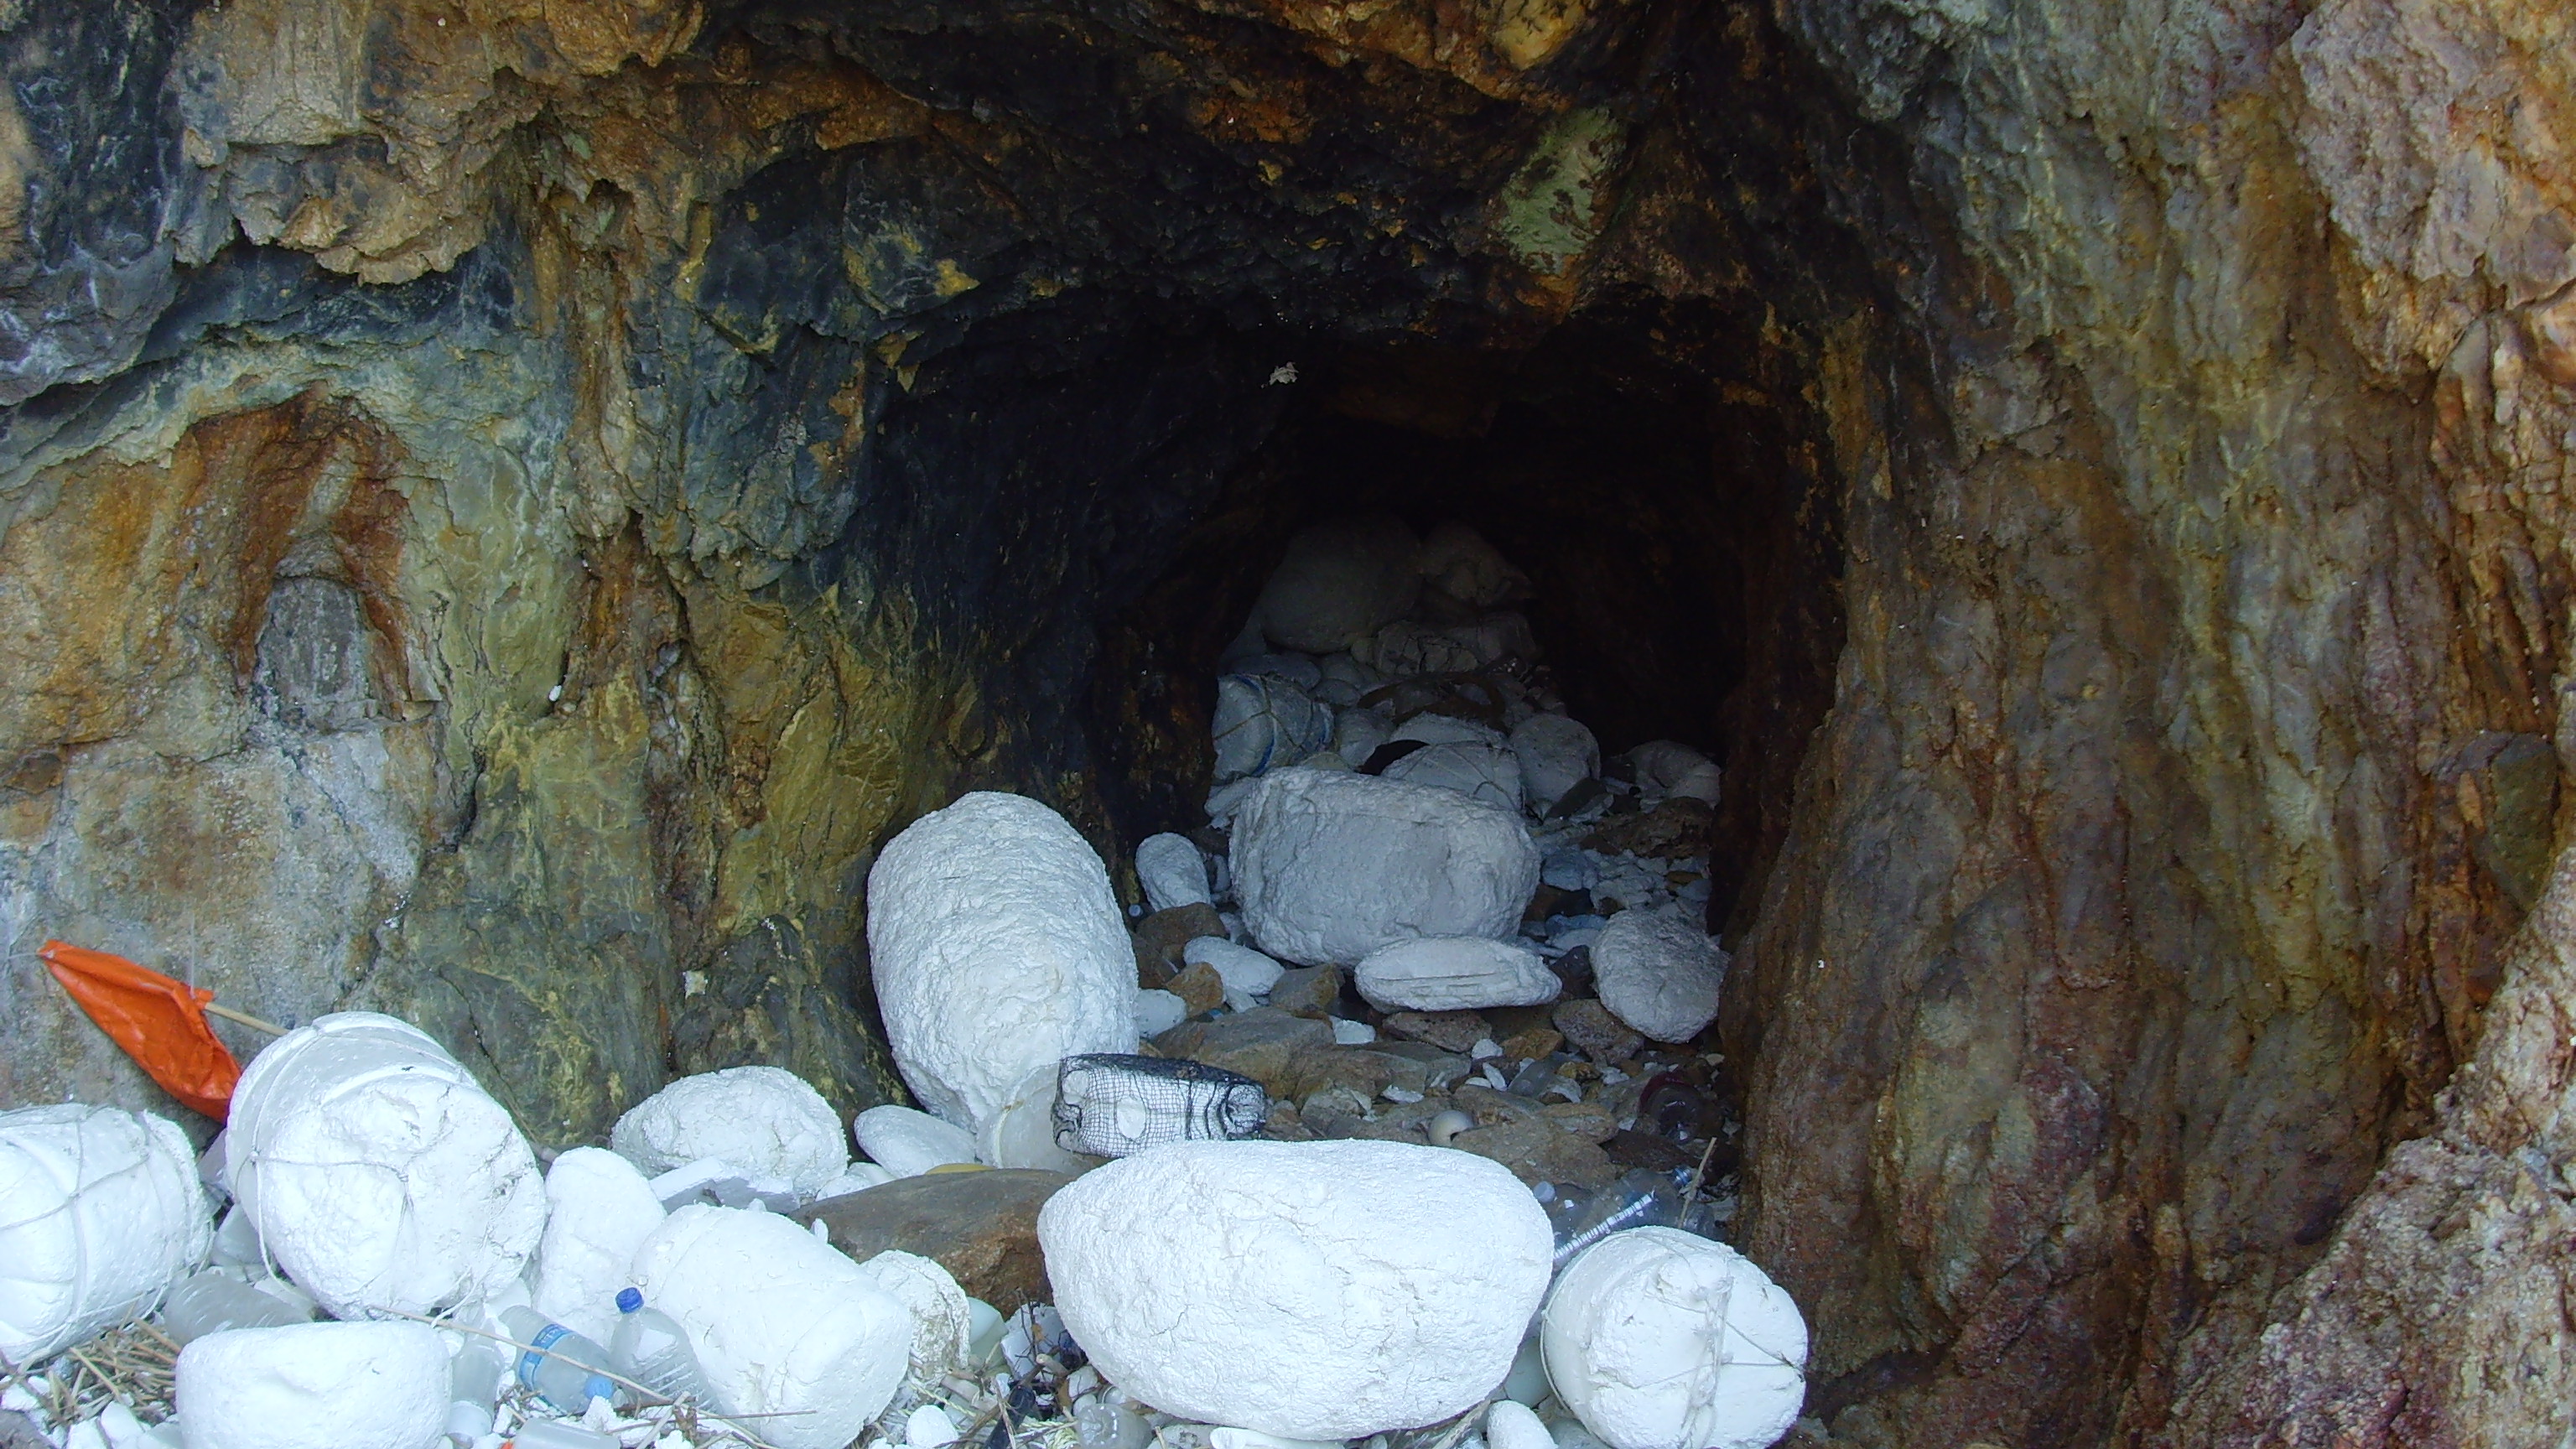 인천 무인도 상공경도. 해변 동굴에도 스티로폼 쓰레기가 가득 쌓여있다.